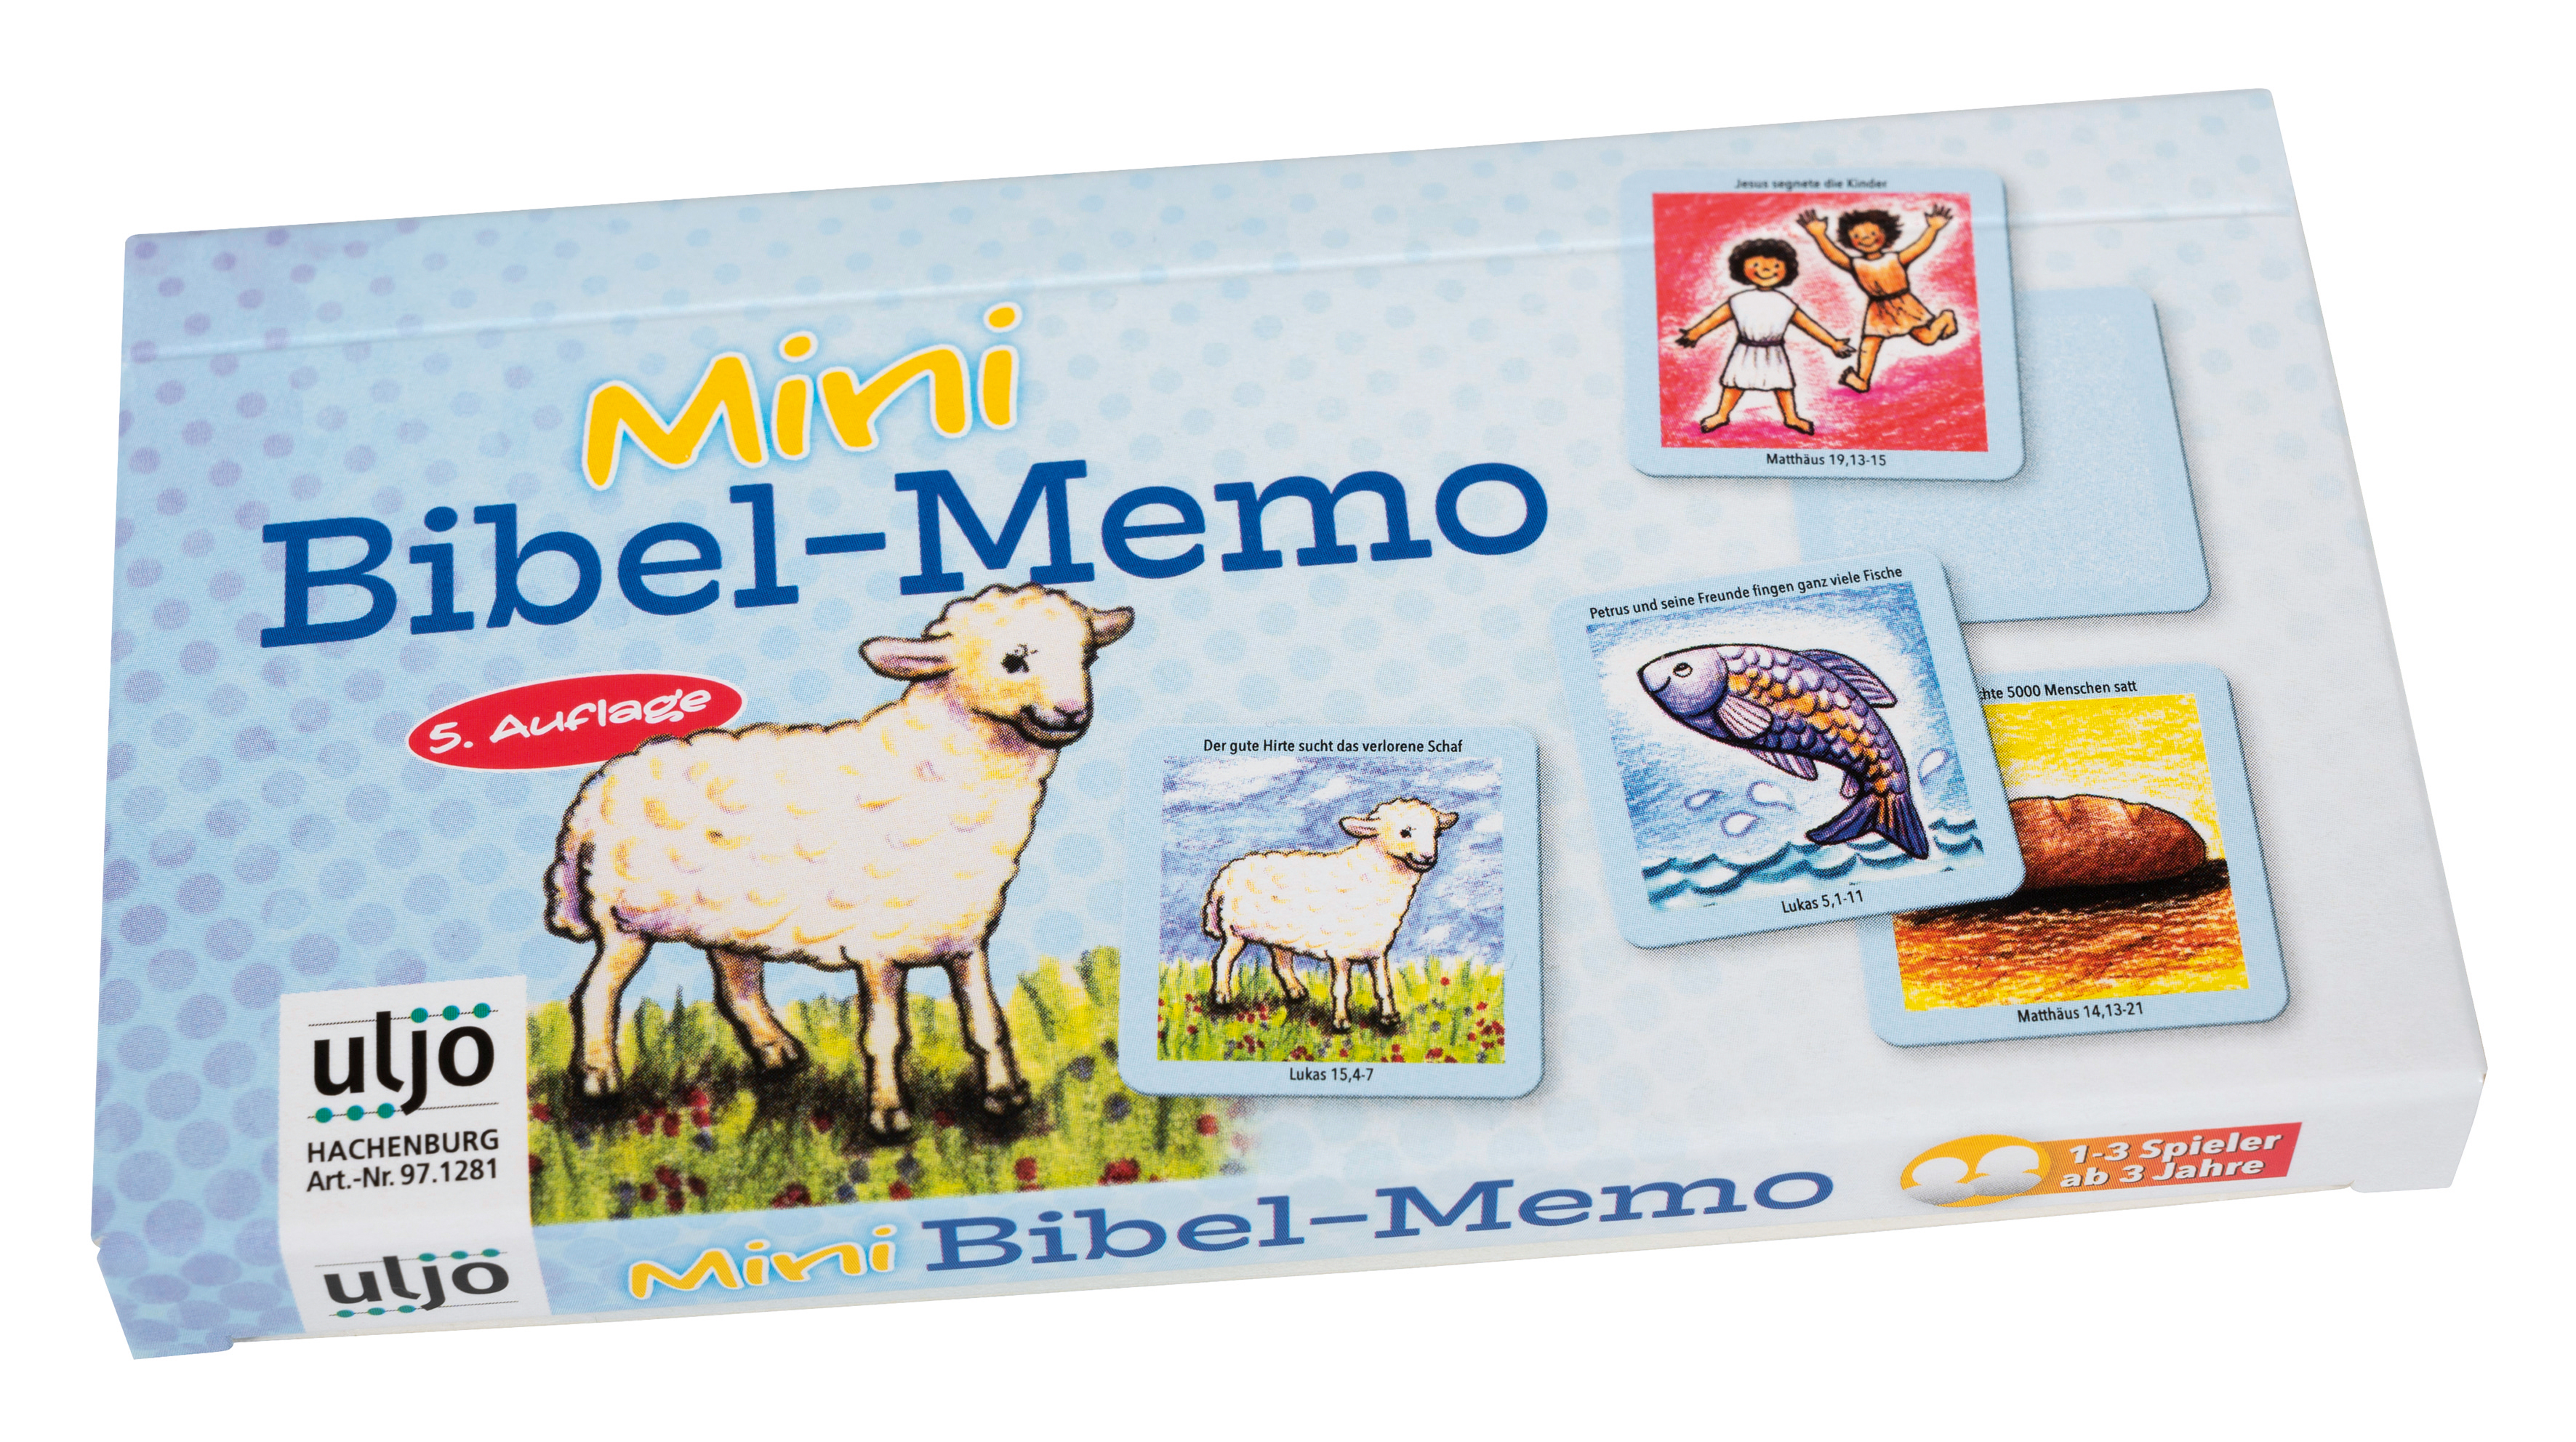 Mini-Bibel-Memo